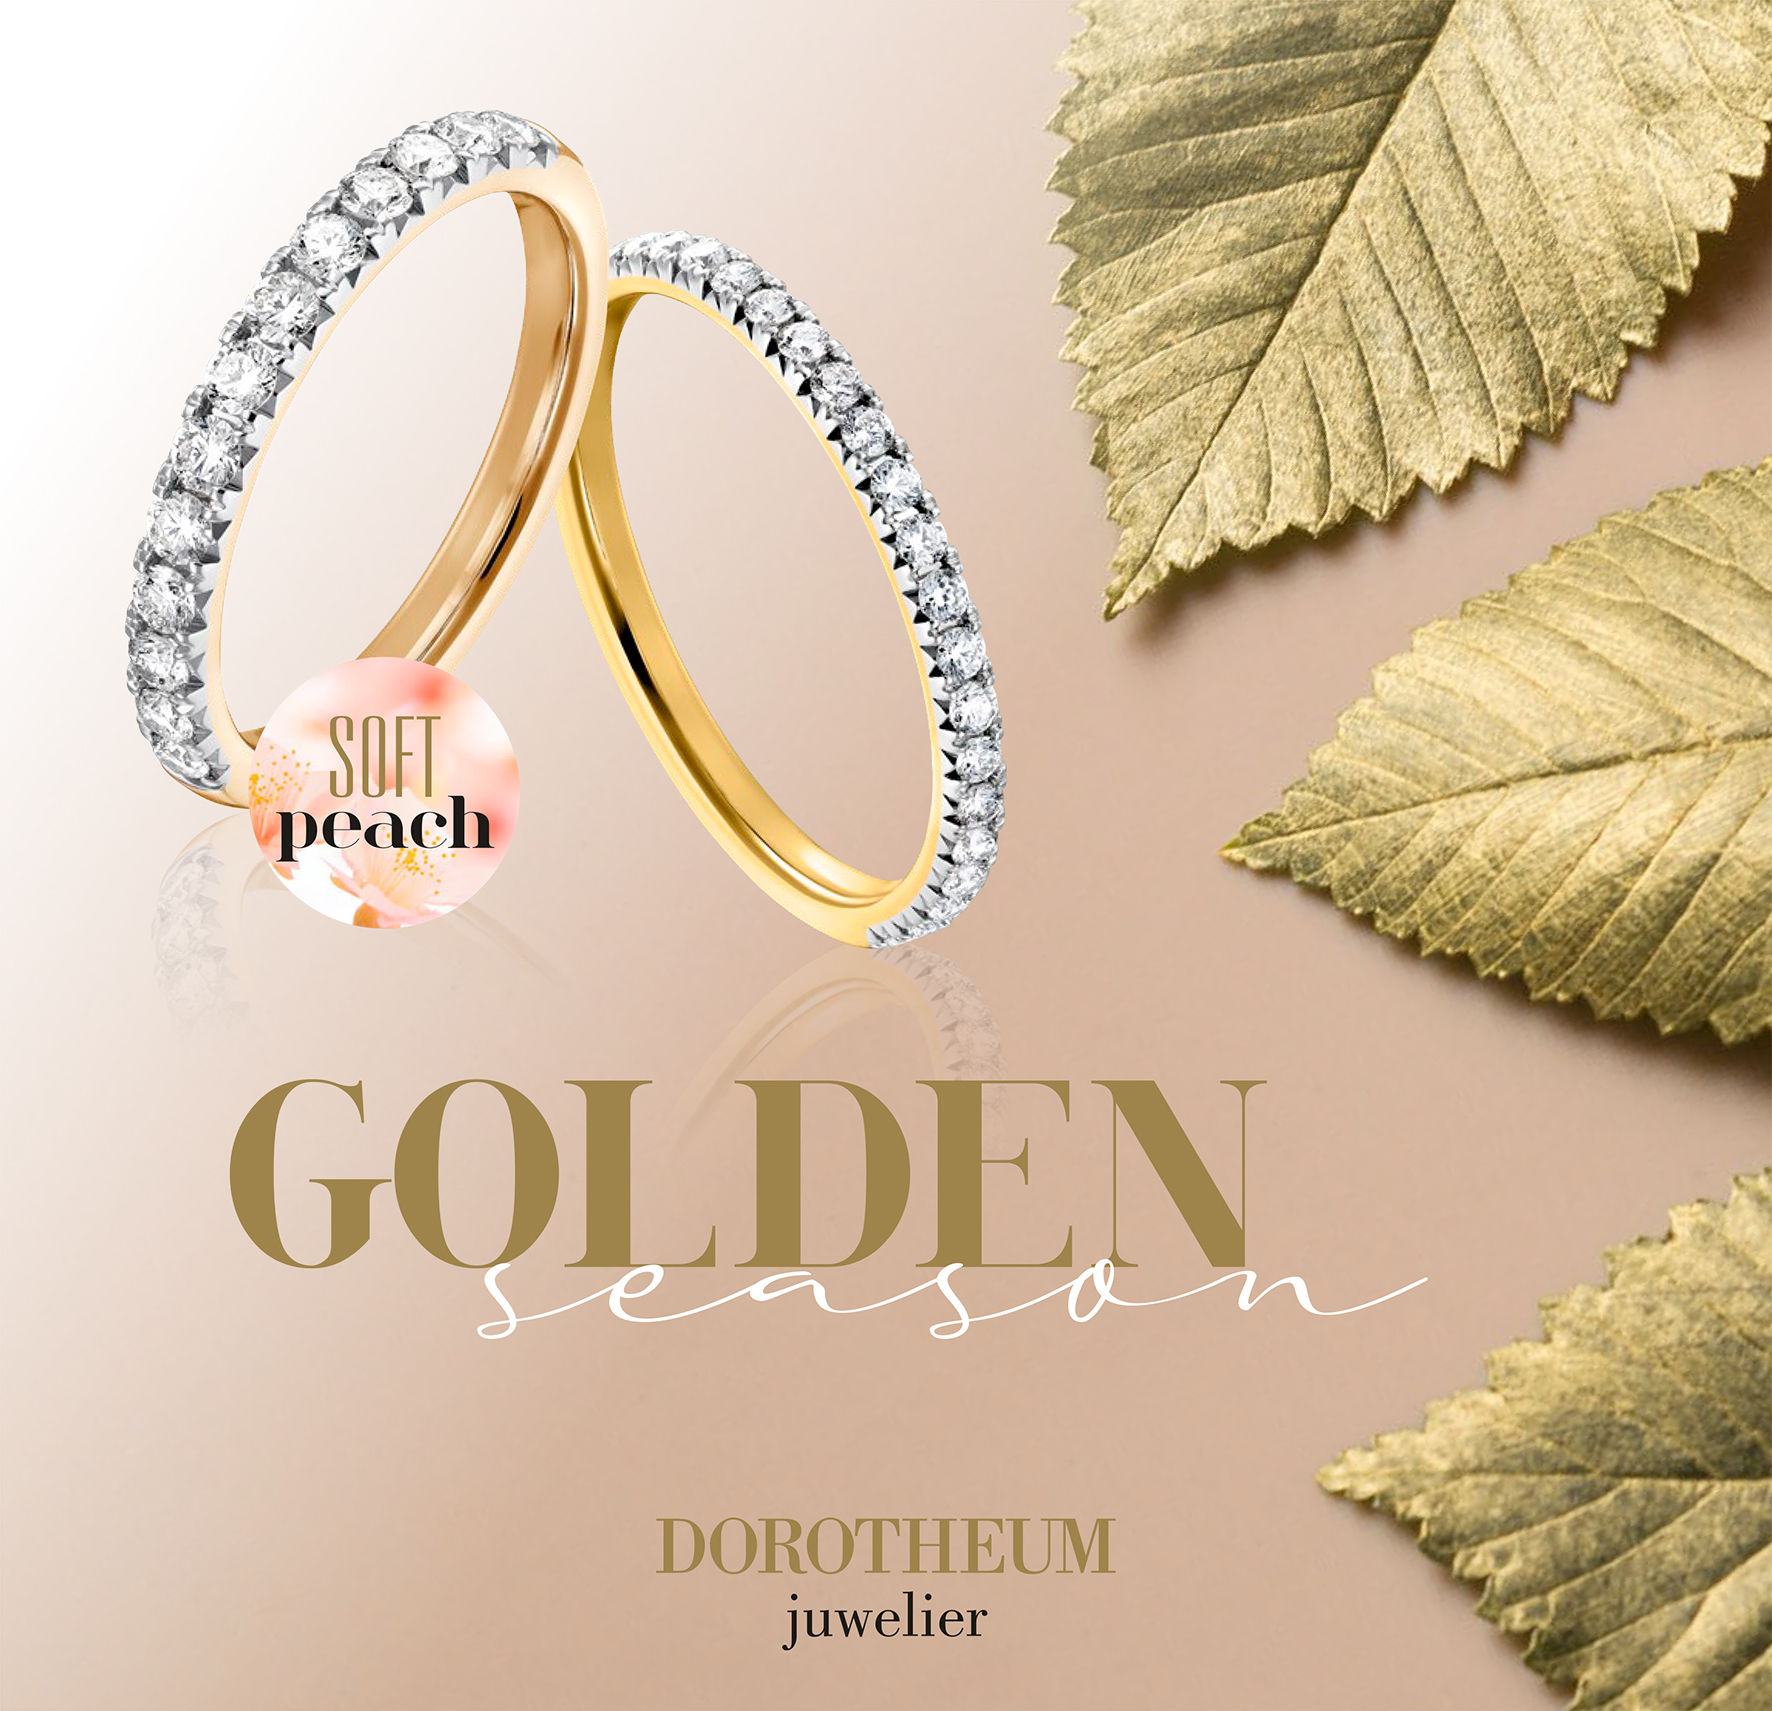 Dorotheum Juwelier zeigt den neuen Lieblings-Goldton